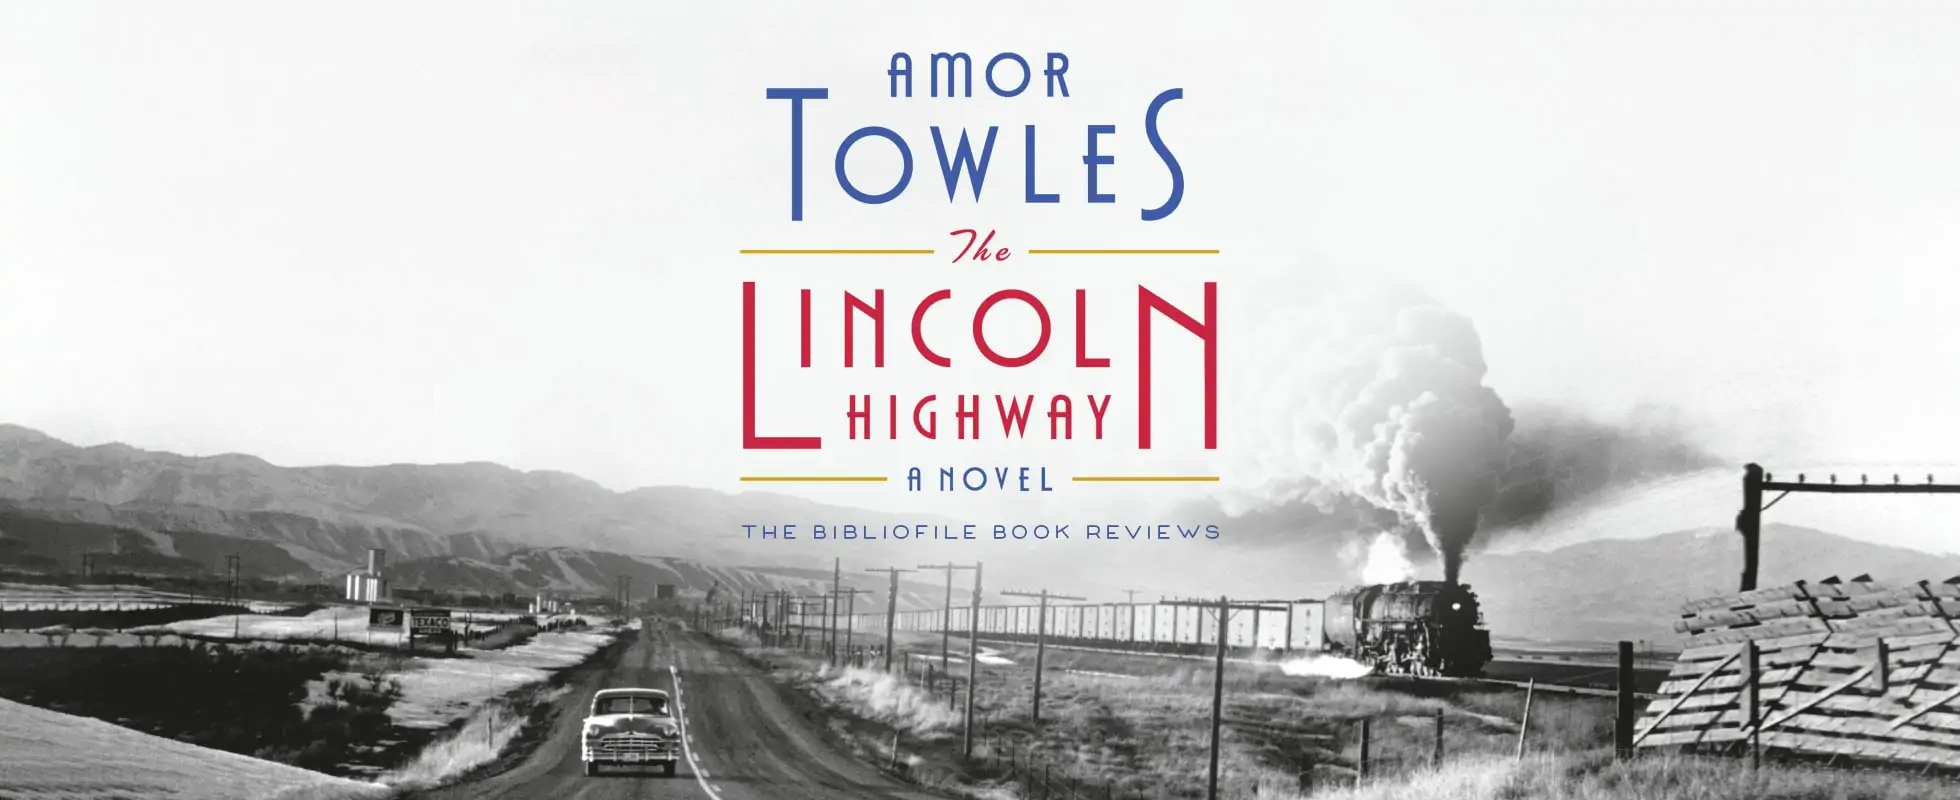 林肯公路由amor towles的书评情节总结概要评论结束讨论